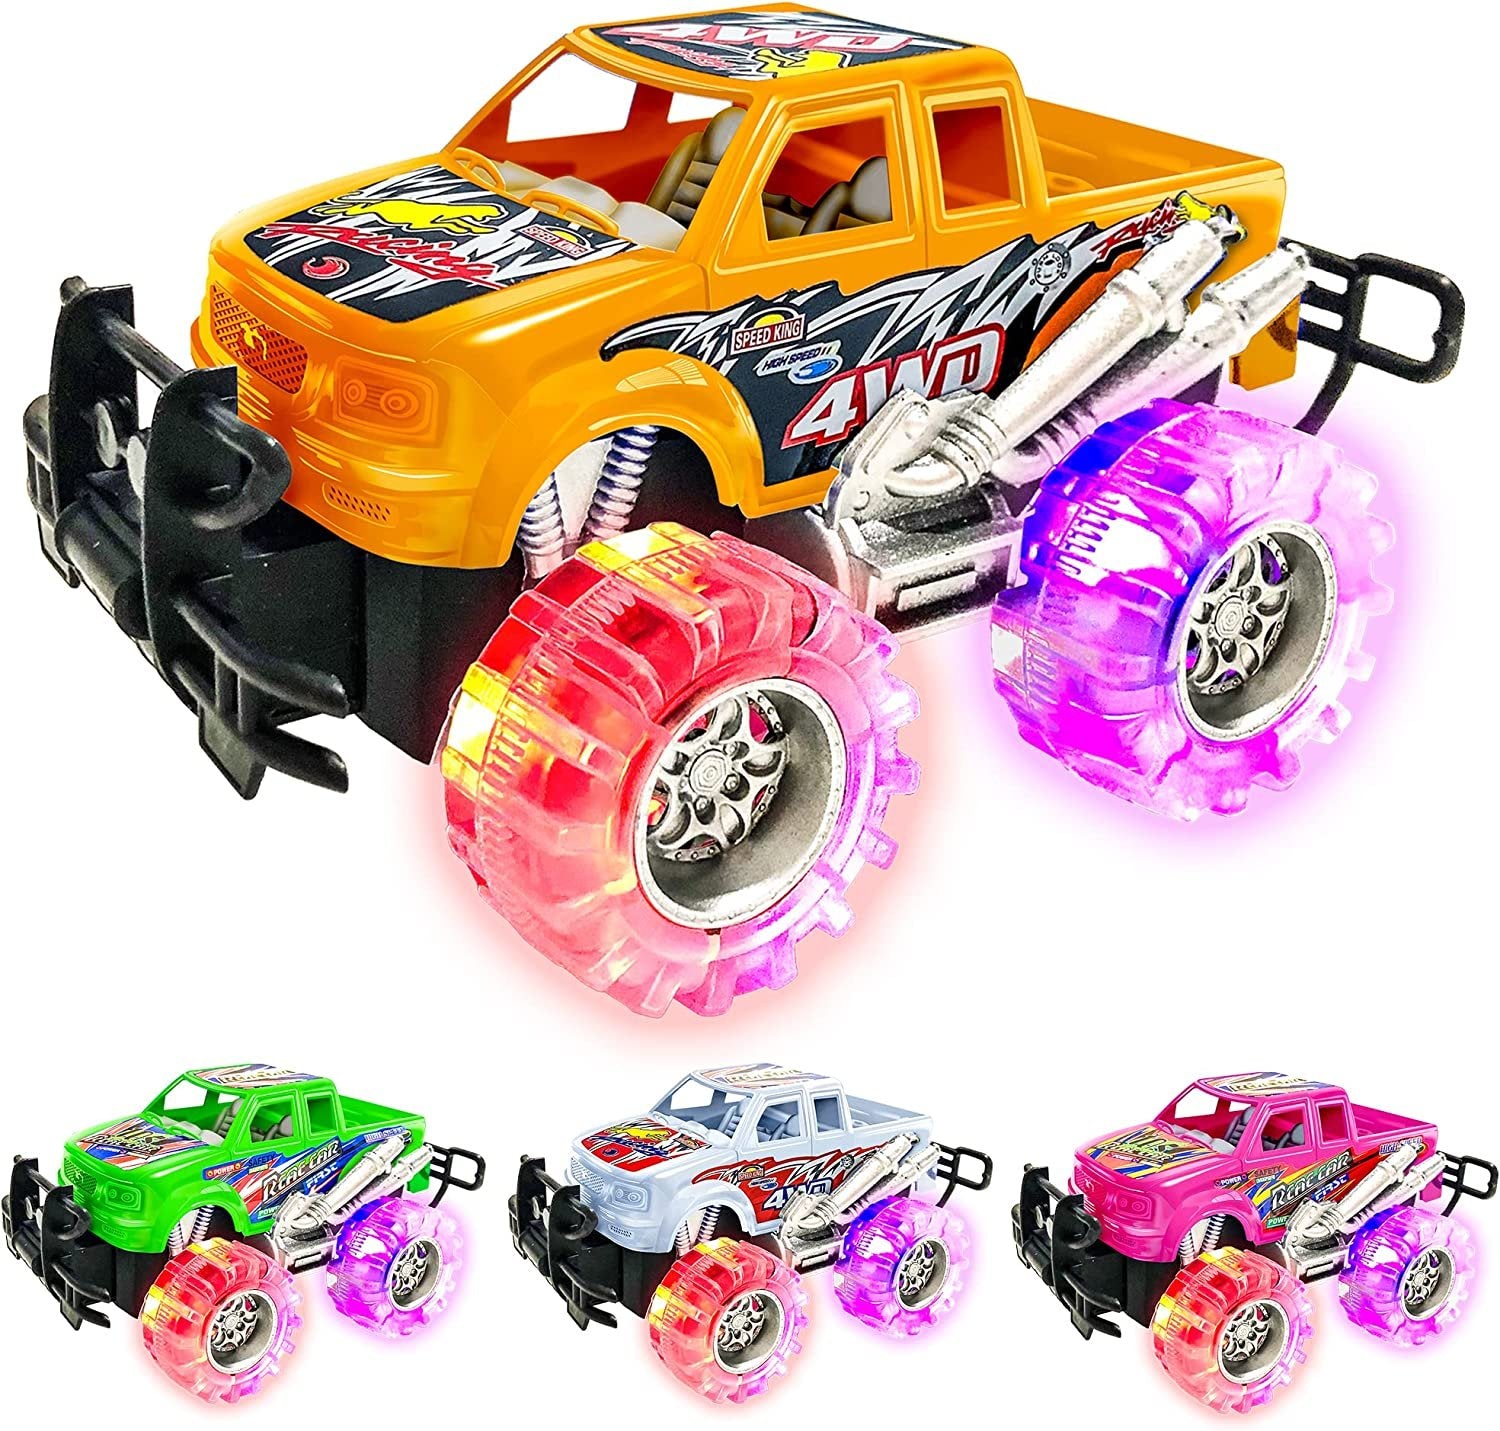 Light Up Monster Trucks (4 Pcs) - 6" Push 'n Go Monster Toy Cars For Kids